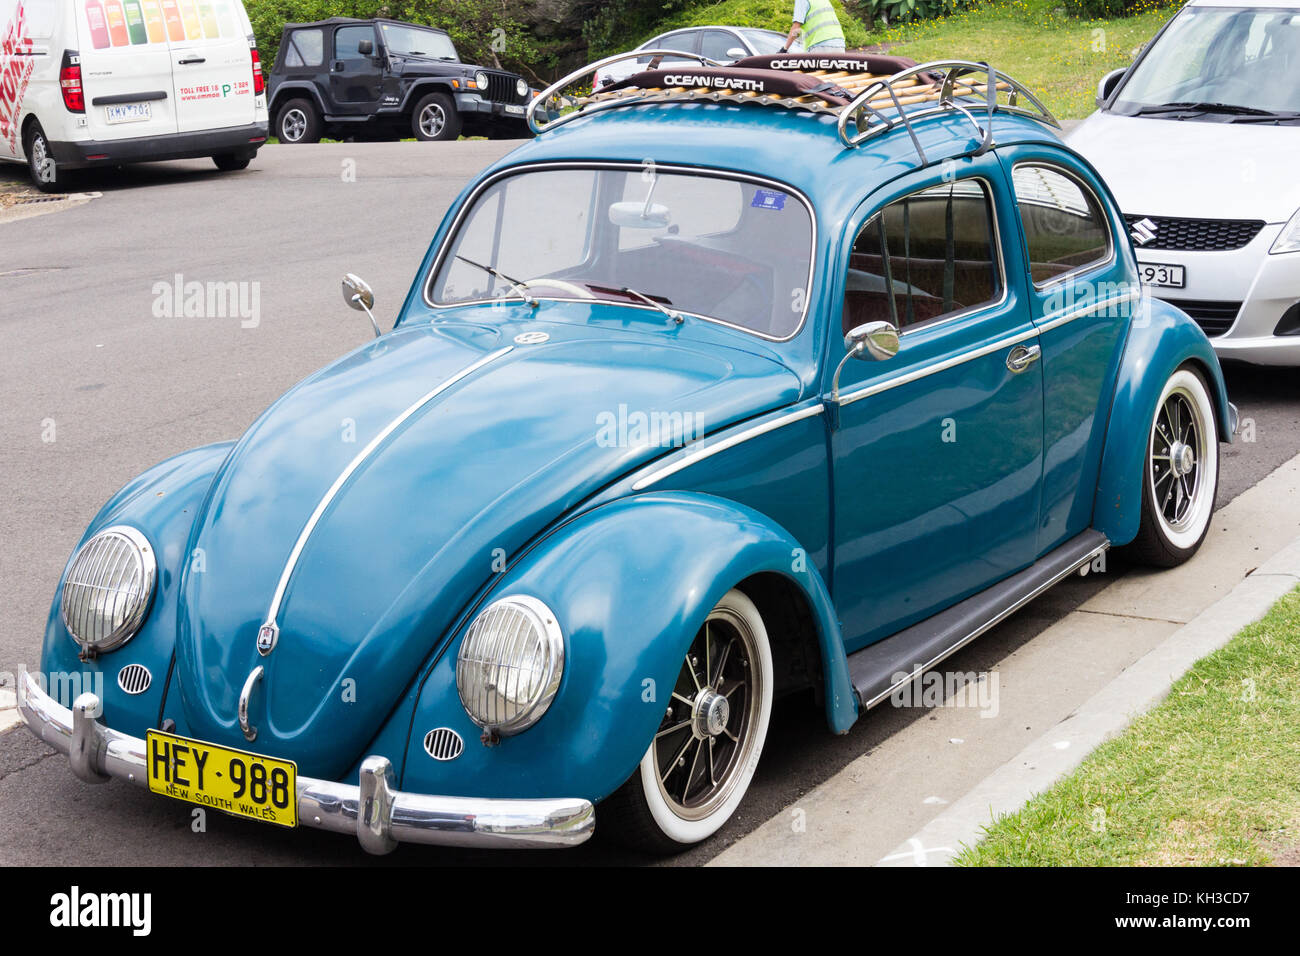 Blue Volkswagen Beetle car Stock Photo